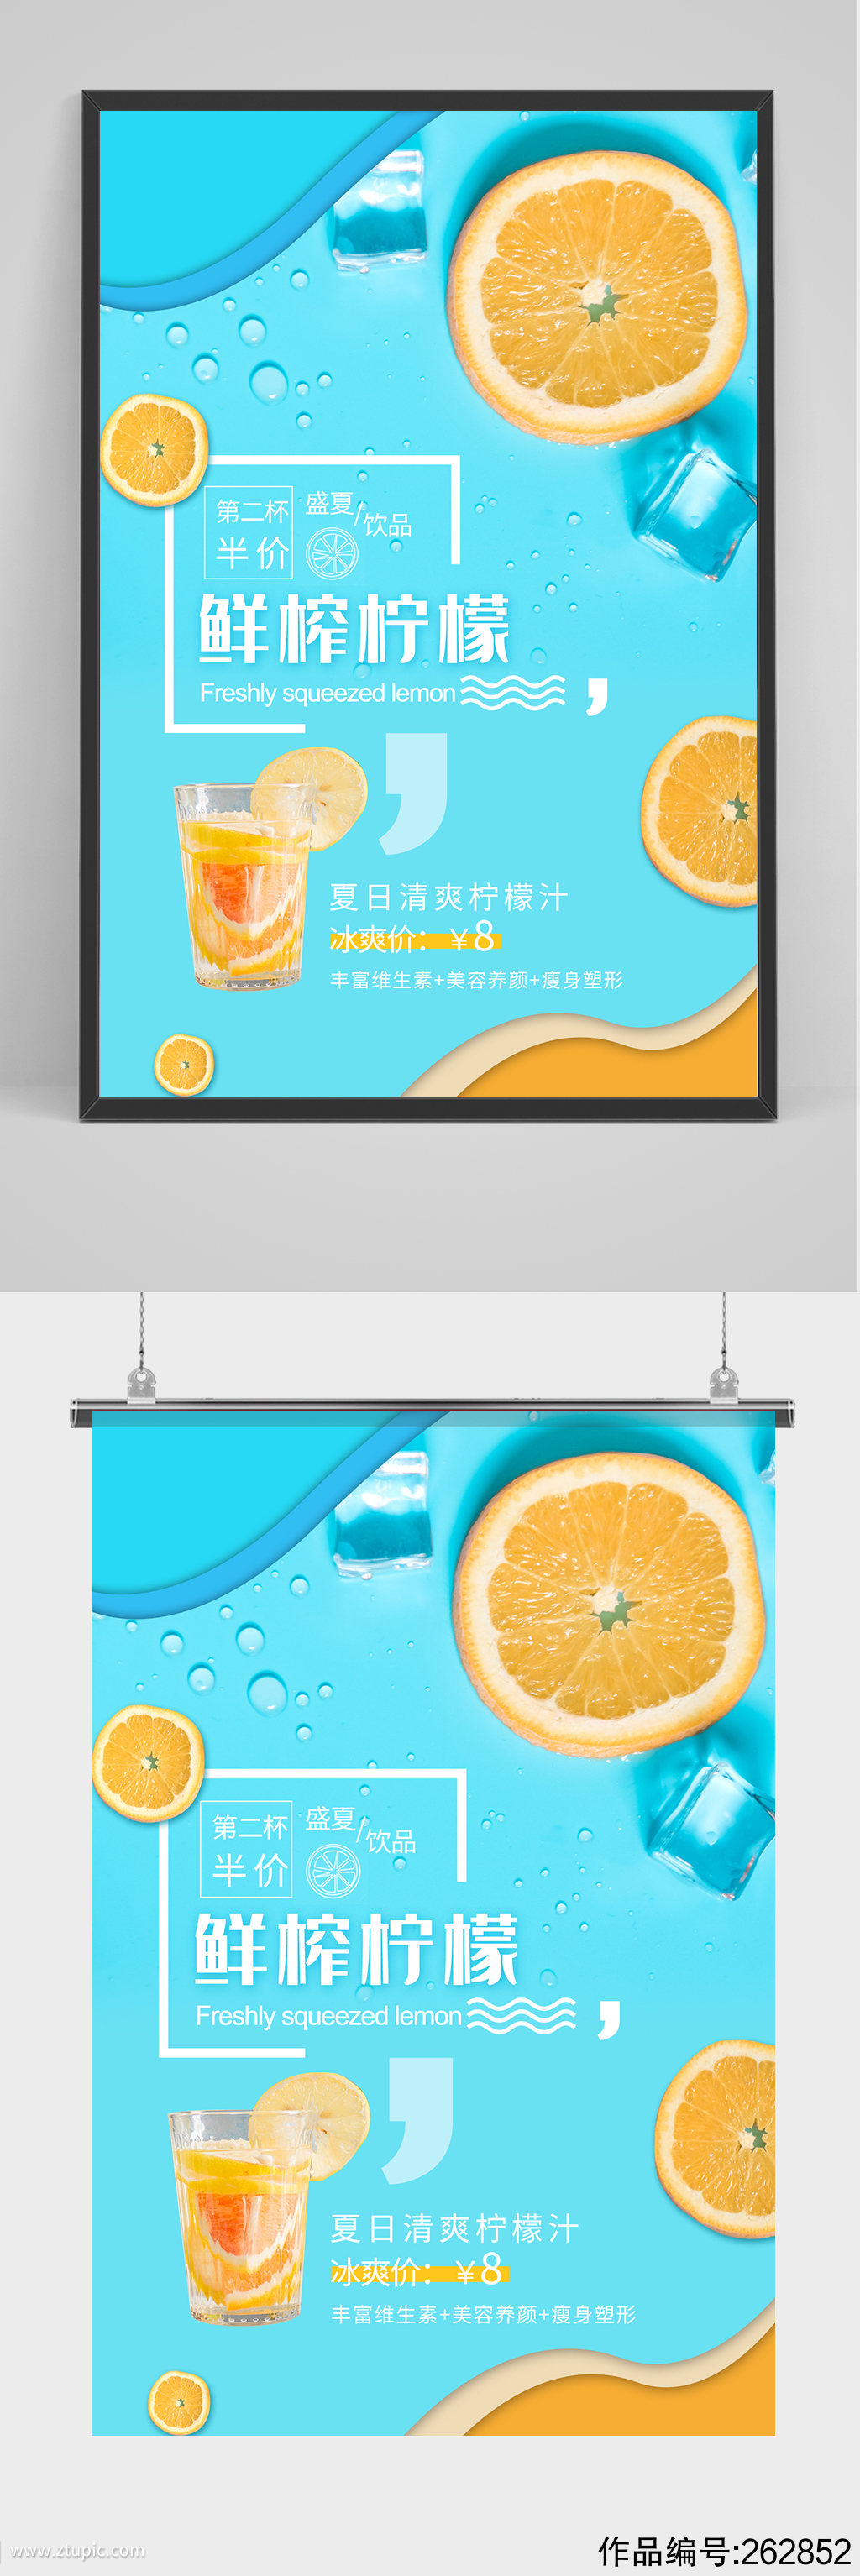 鲜榨柠檬汁海报设计